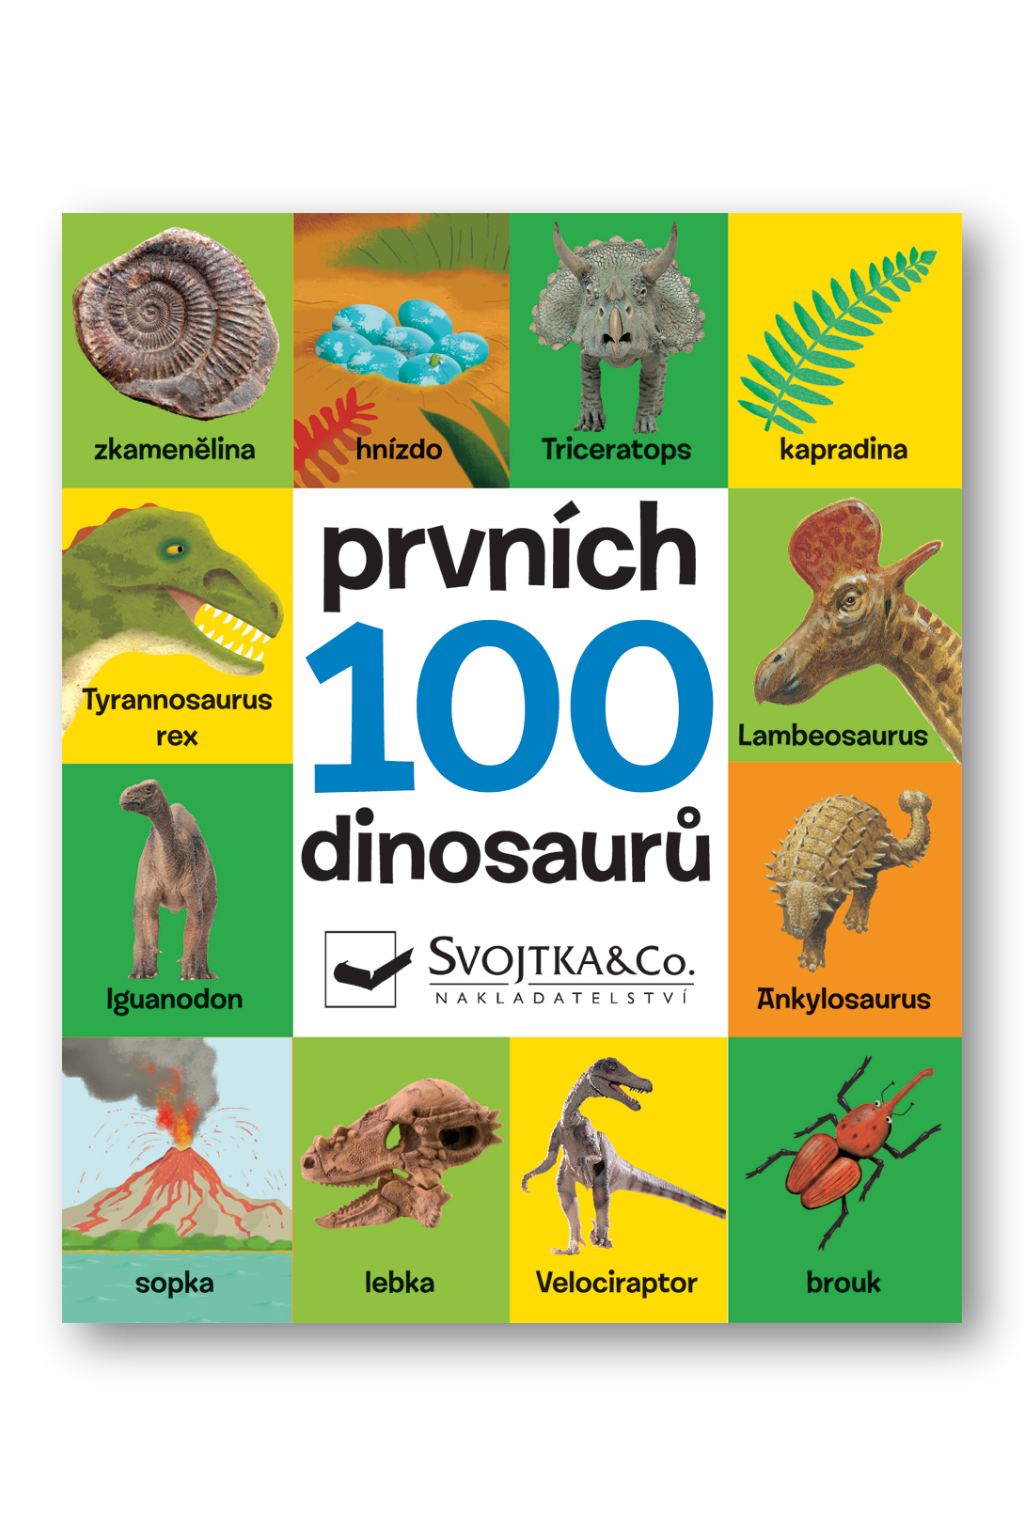 Prvních 100 dinosaurů